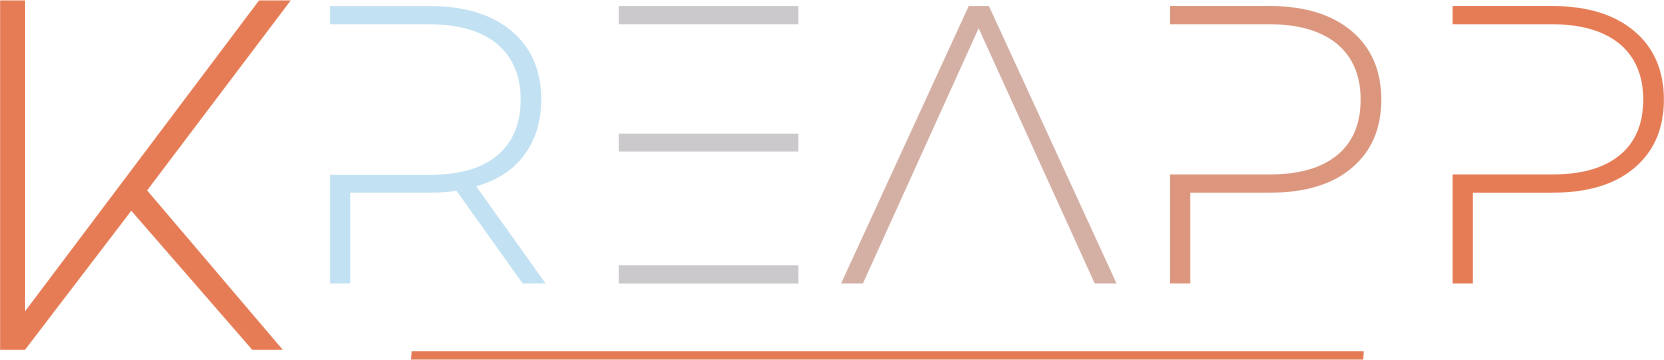 logo Kreapp